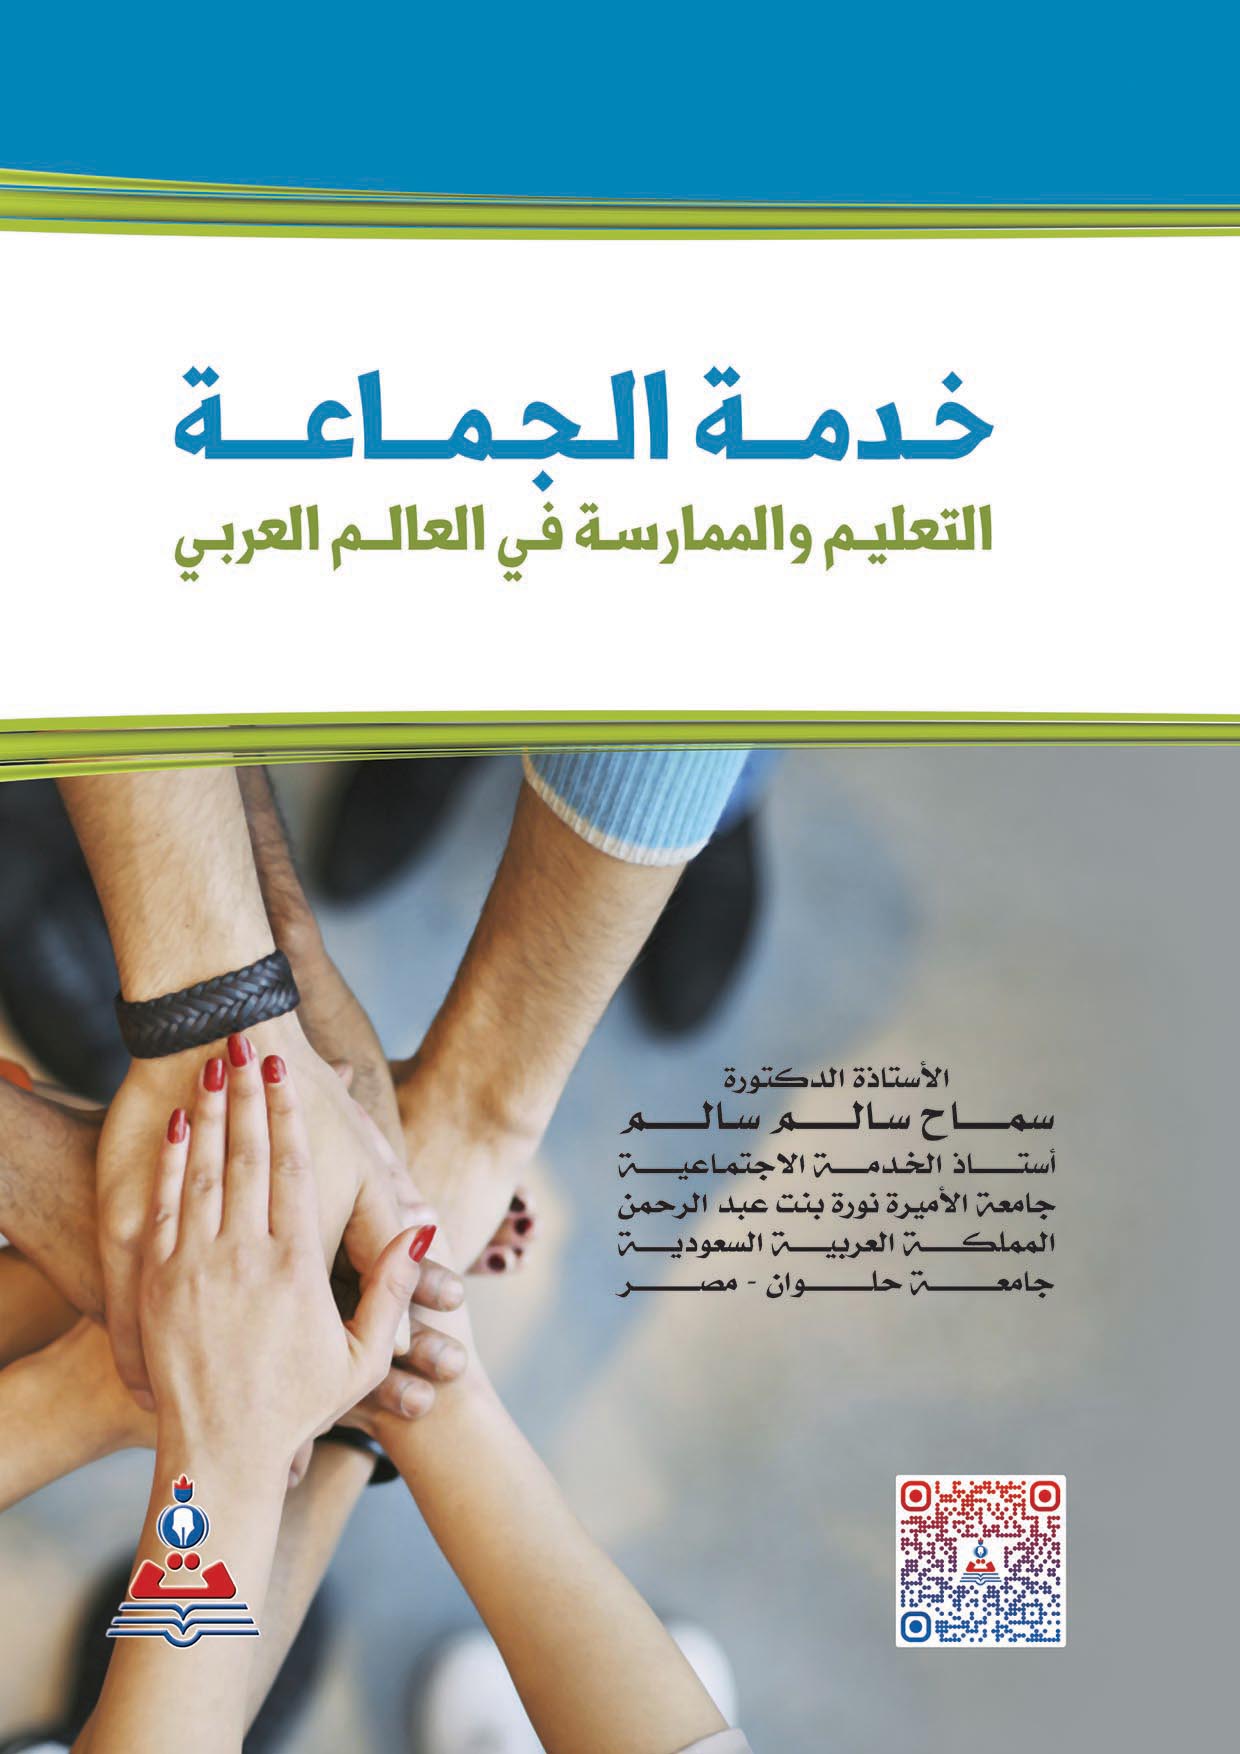 خدمة الجماعة التعليم والممارسة في العالم العربي